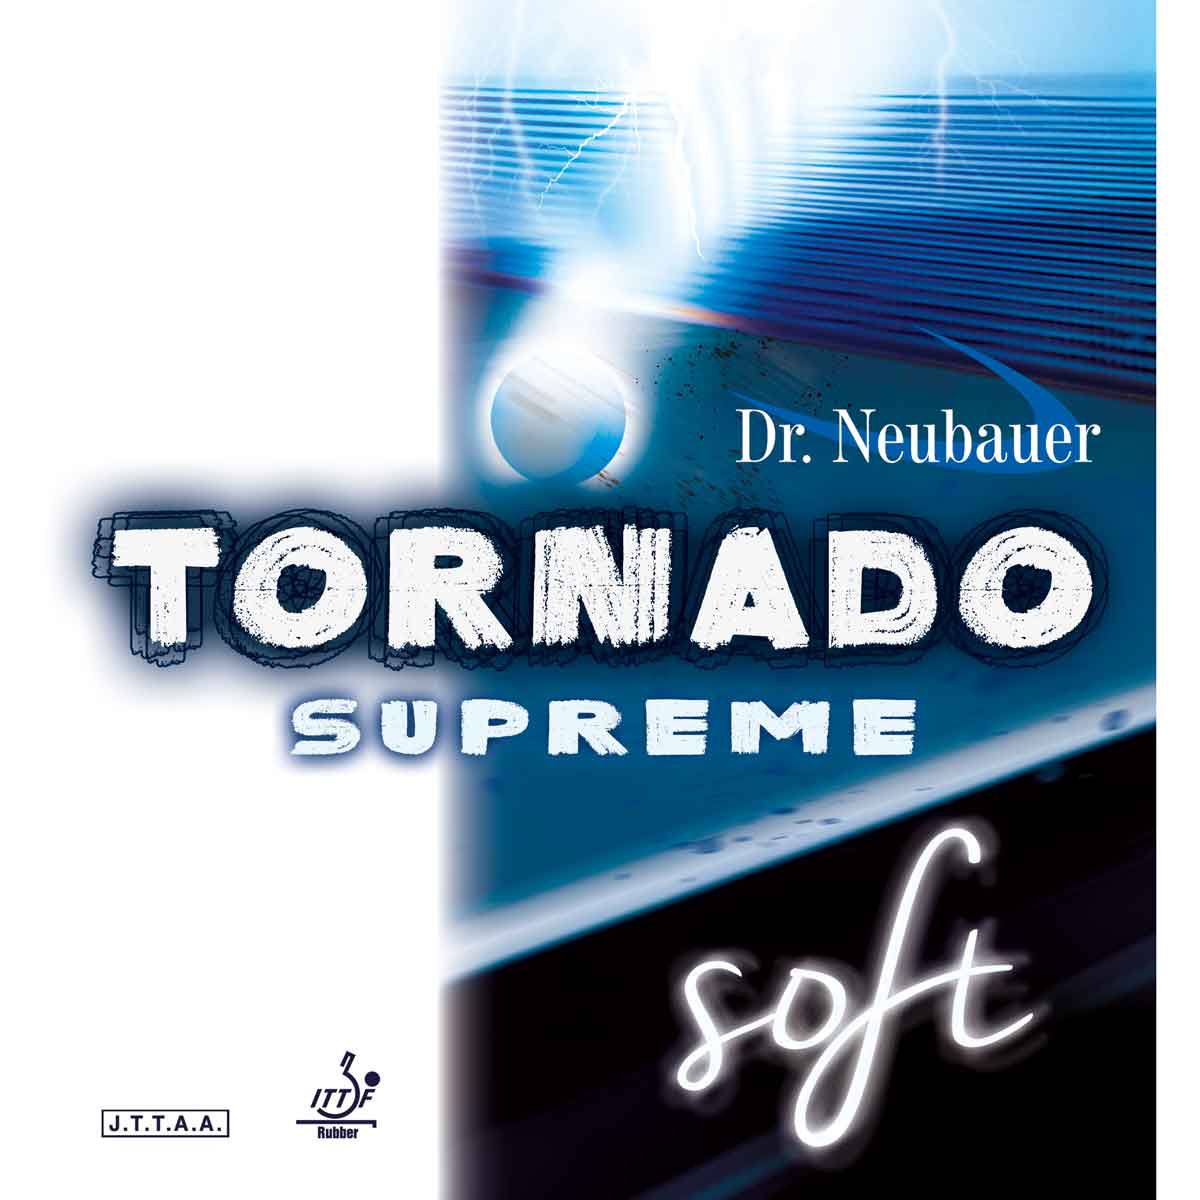 Dr. Neubauer Rubber Tornado Supreme Soft